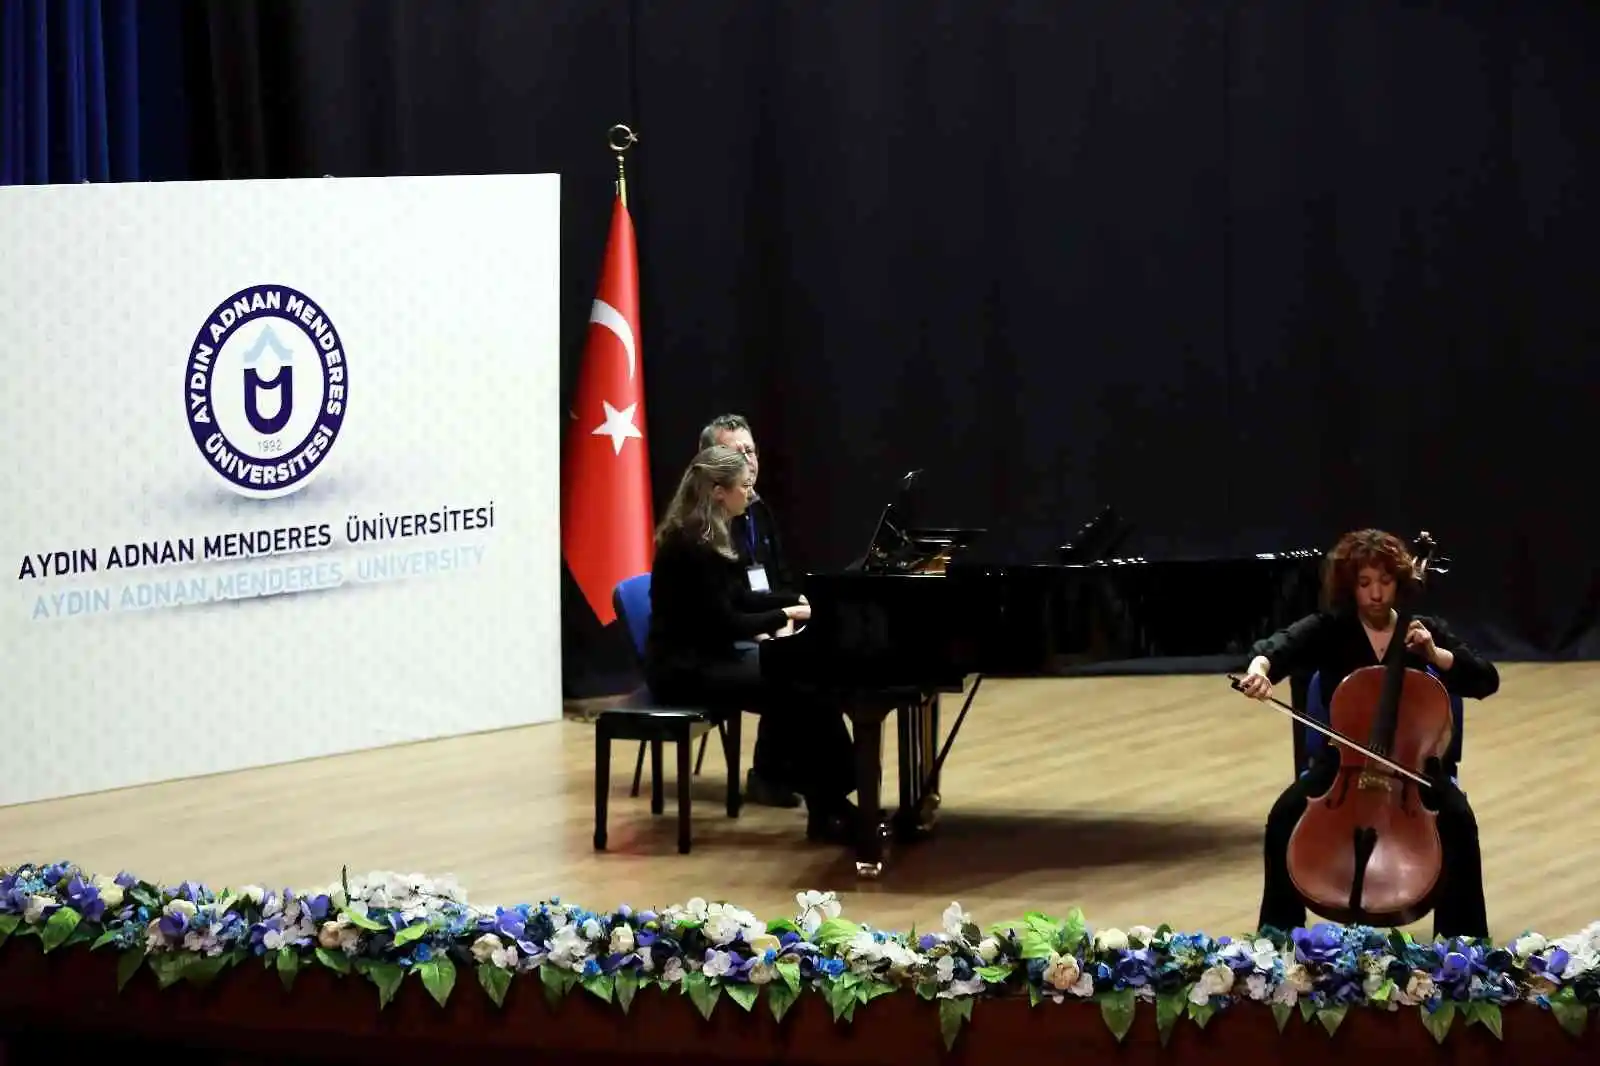 ADÜ’de ’3. Uluslararası Müzik Araştırmaları Öğrenci Kongresi’ açılış töreni gerçekleştirildi
